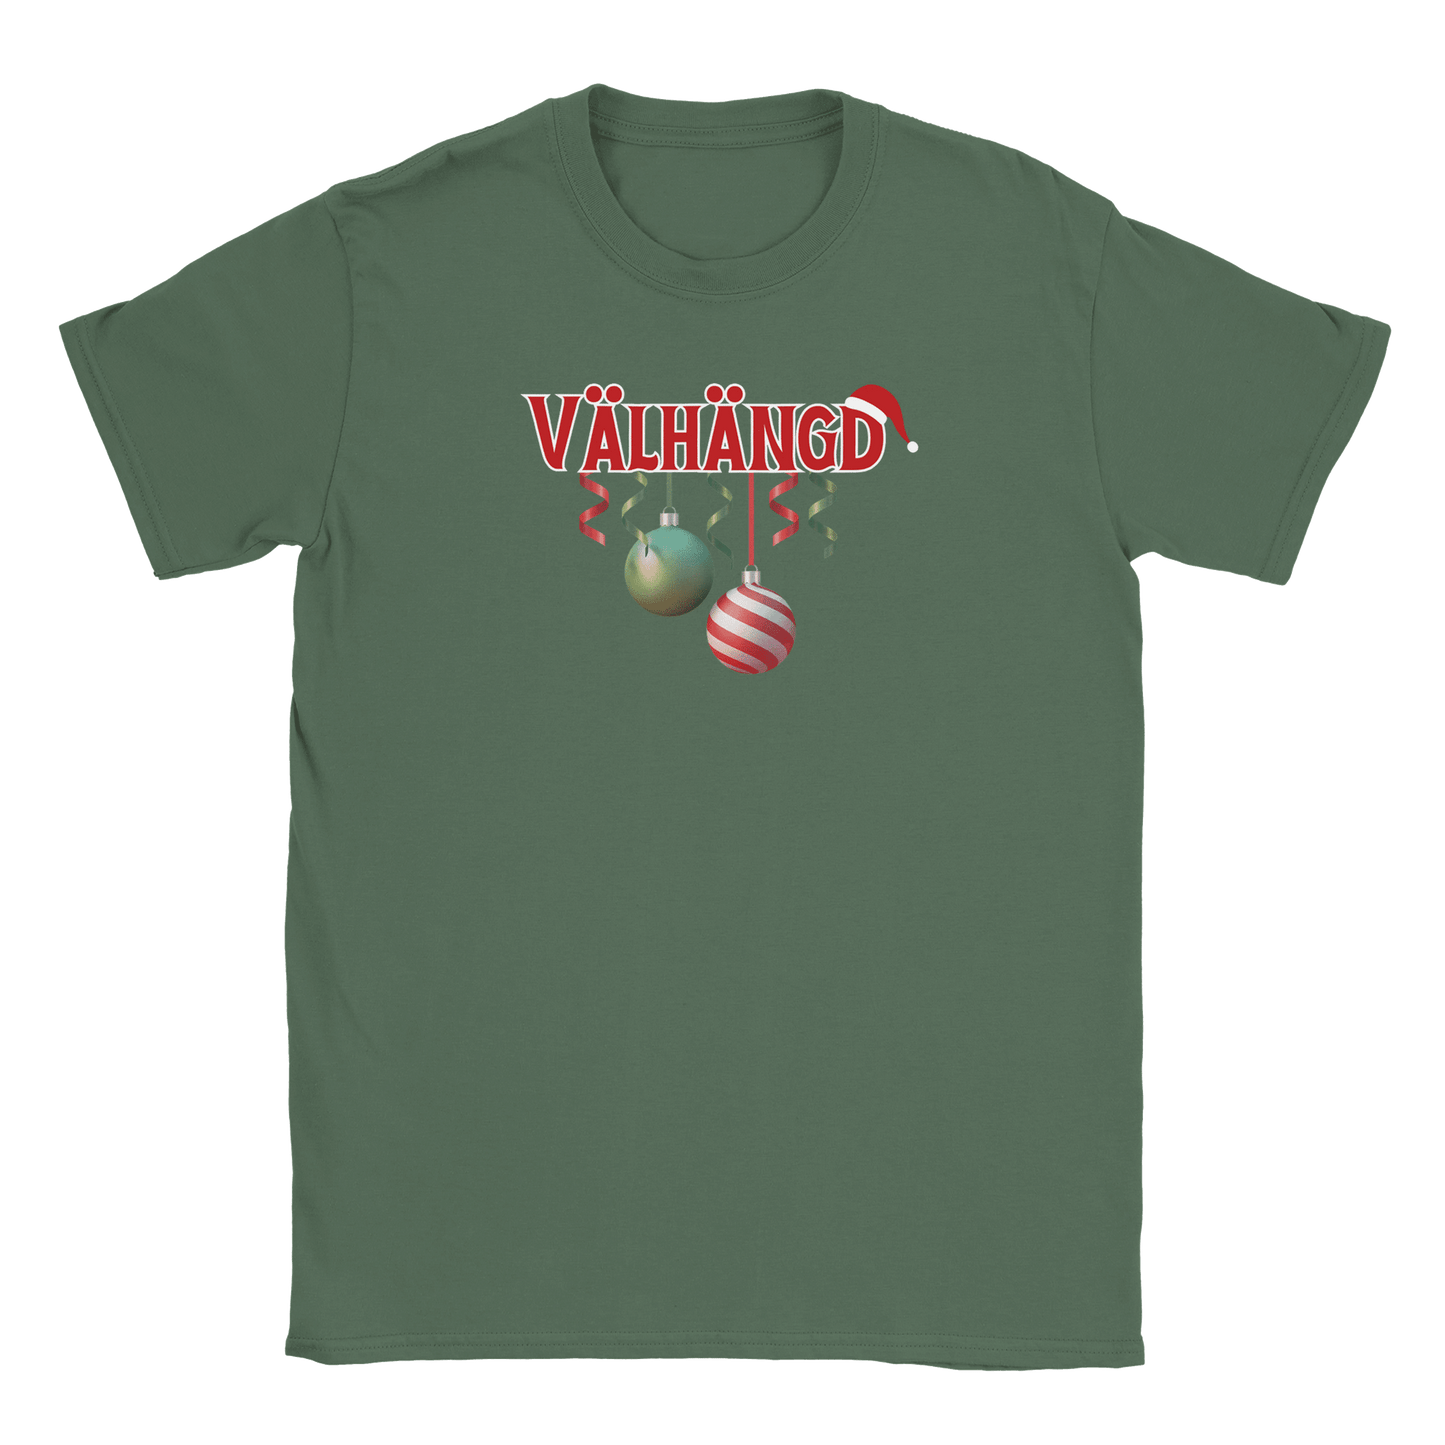 Välhängd - T-shirt Military Green